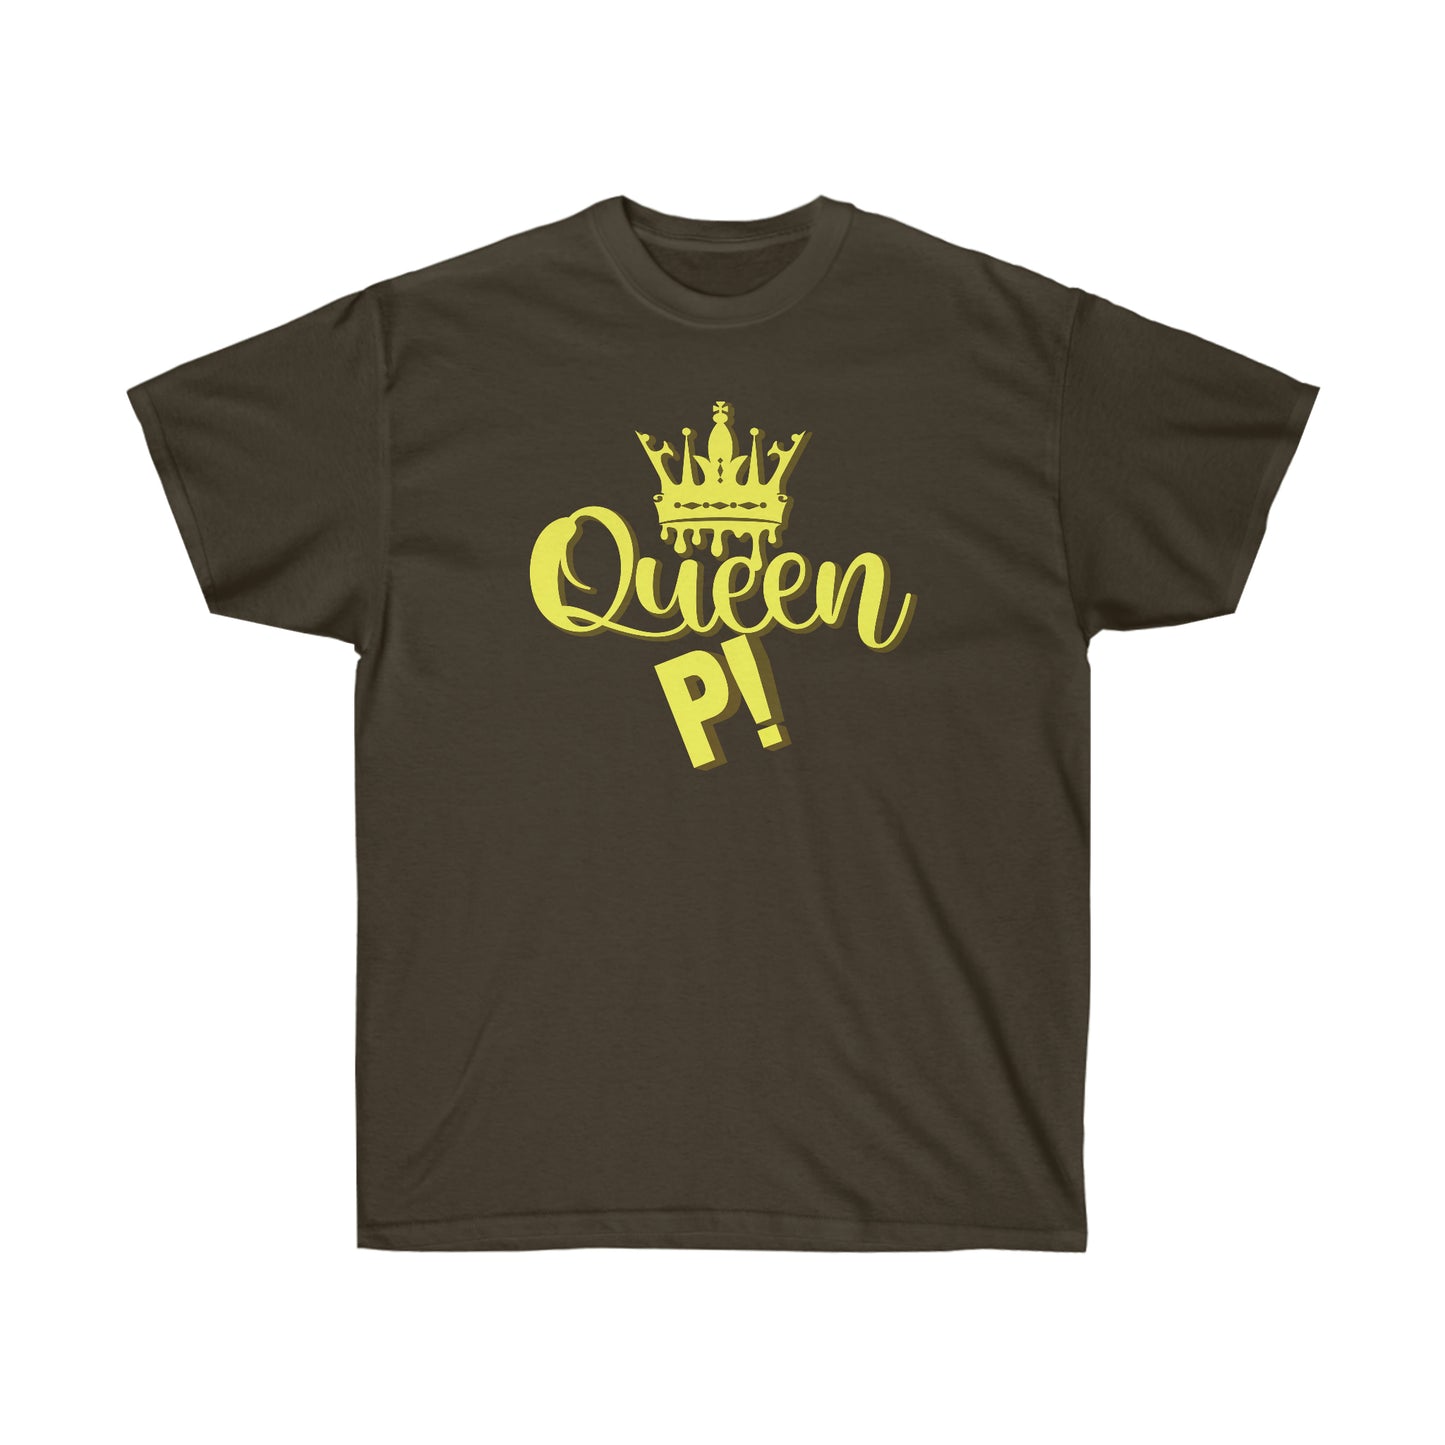 Queen P! - Queen Tee